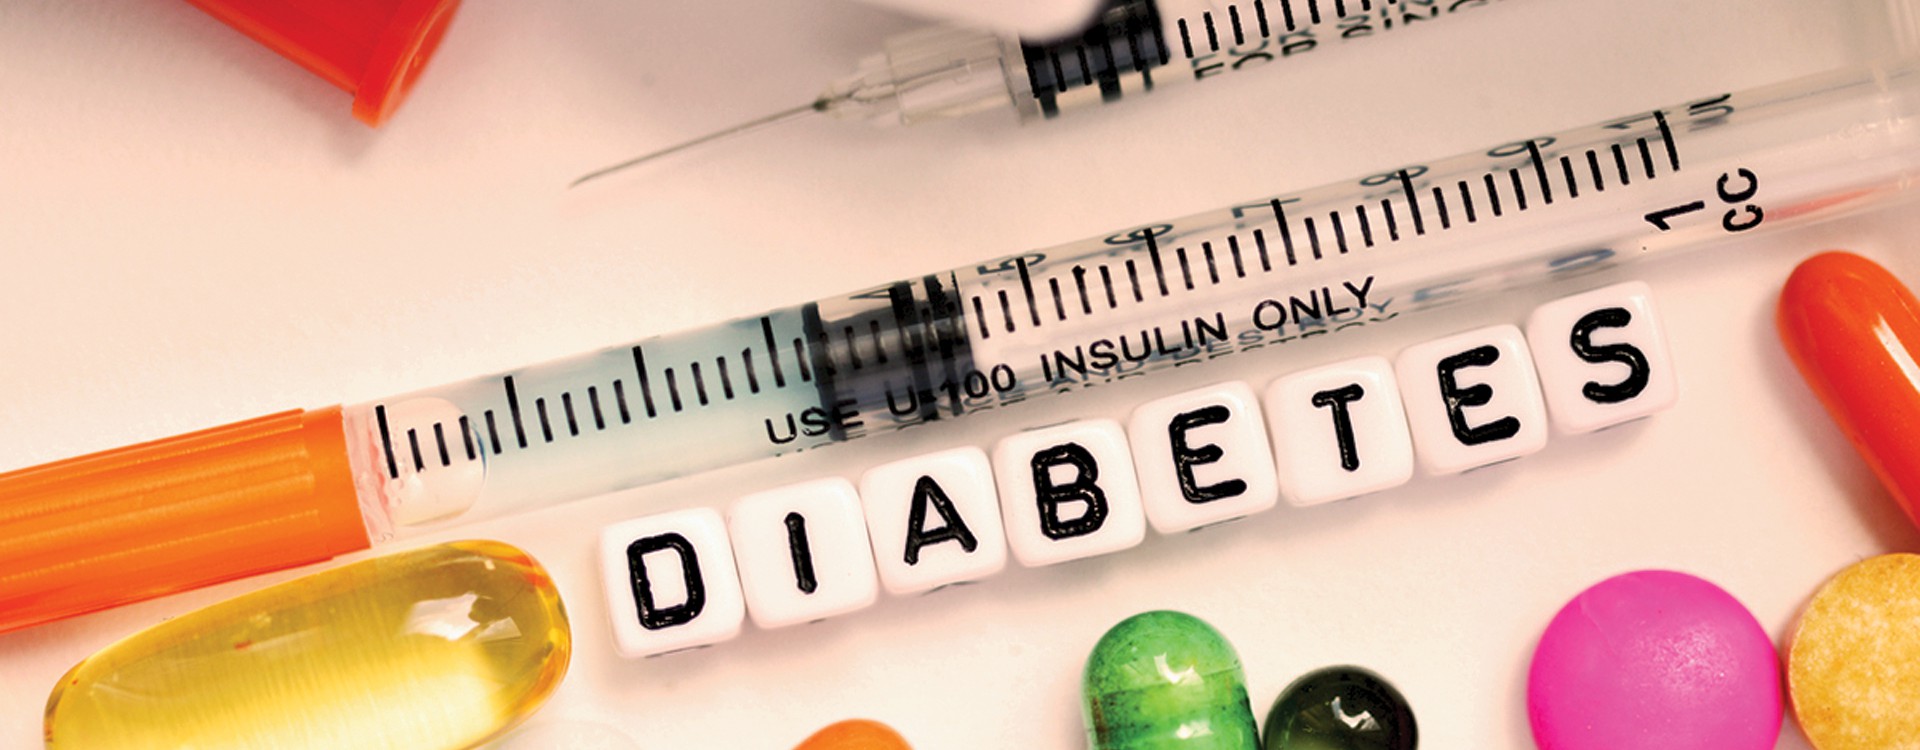 بررسی بیماری دیابت، انواع انسولین و اصول مصرف آن در مجله پزشکی طب تولید